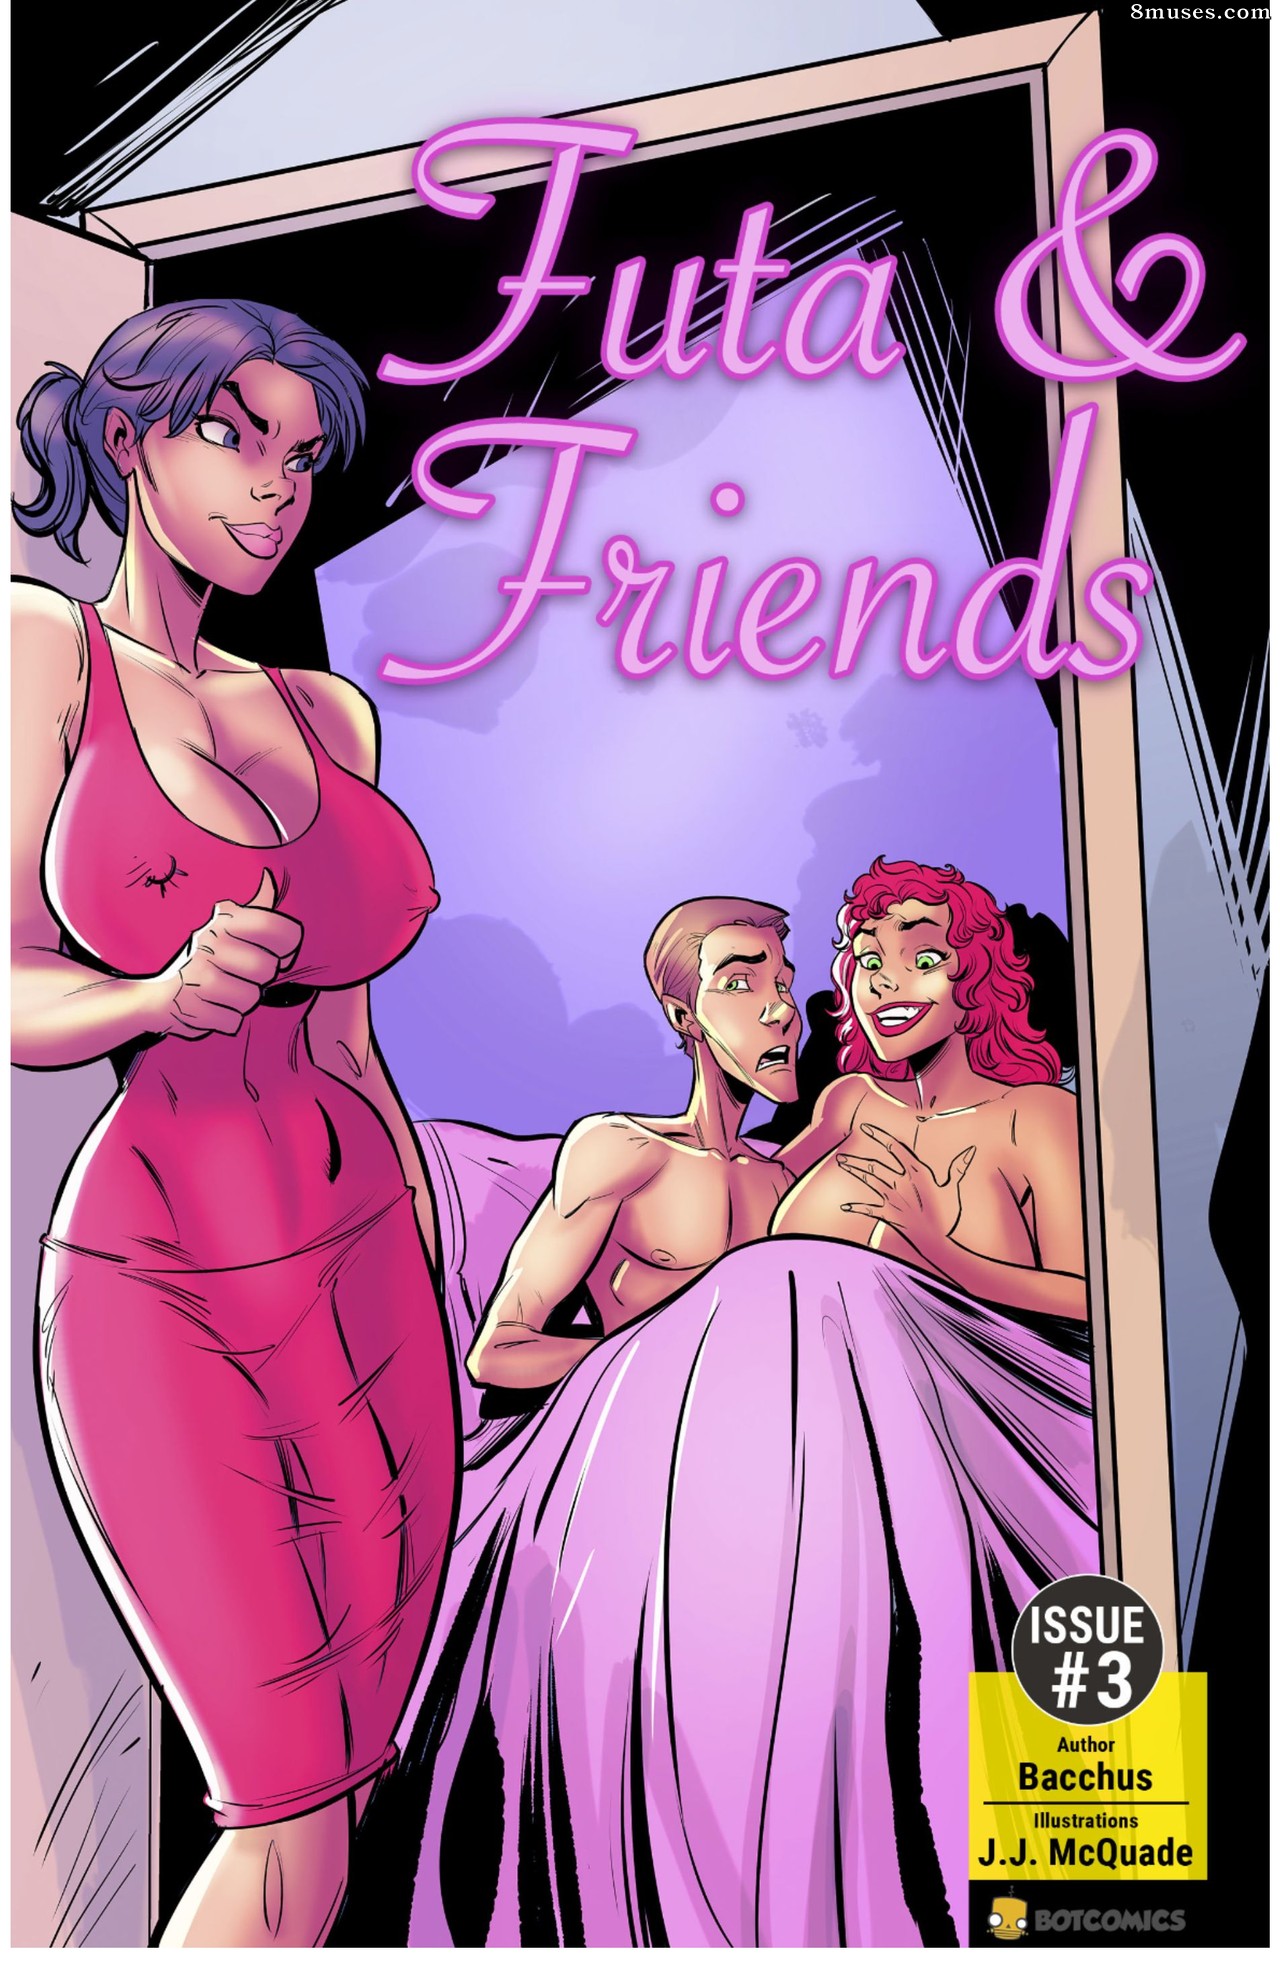 Futanari Porn Comics - Futa & Friends Issue 3 - 8muses Comics - Sex Comics and Porn Cartoons